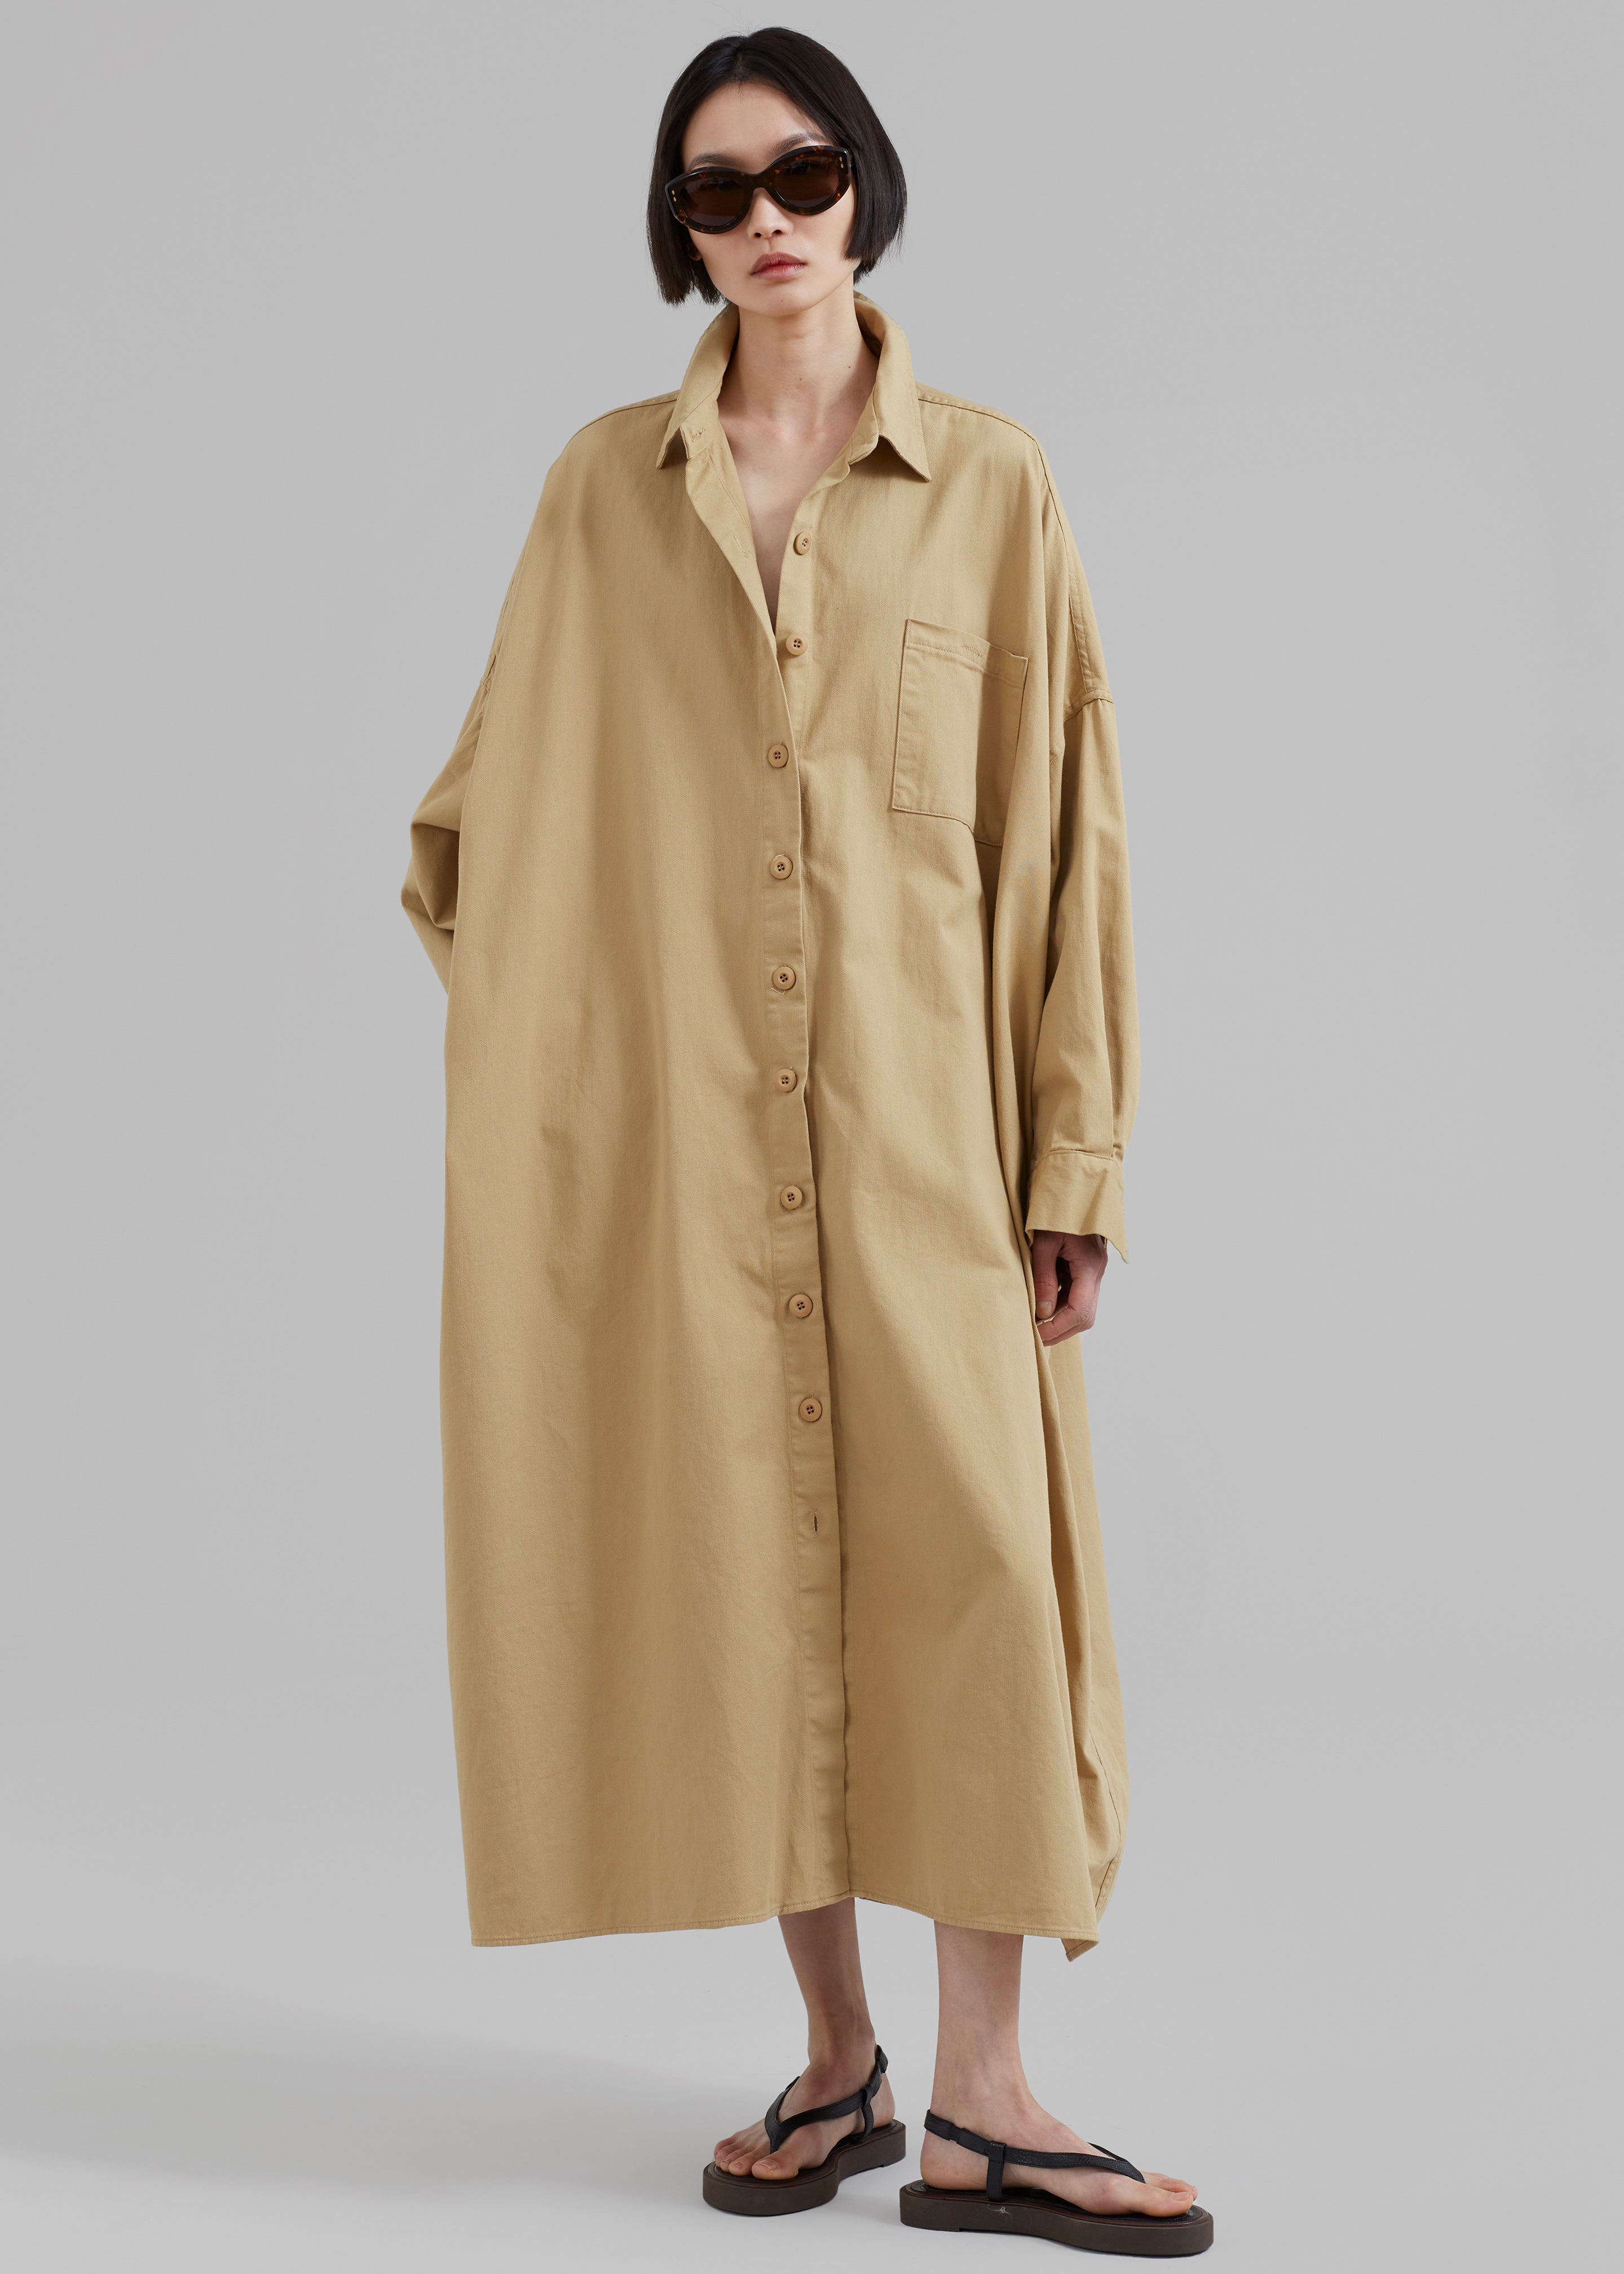 Kason Oversized Shirt Dress - Sahara - 4